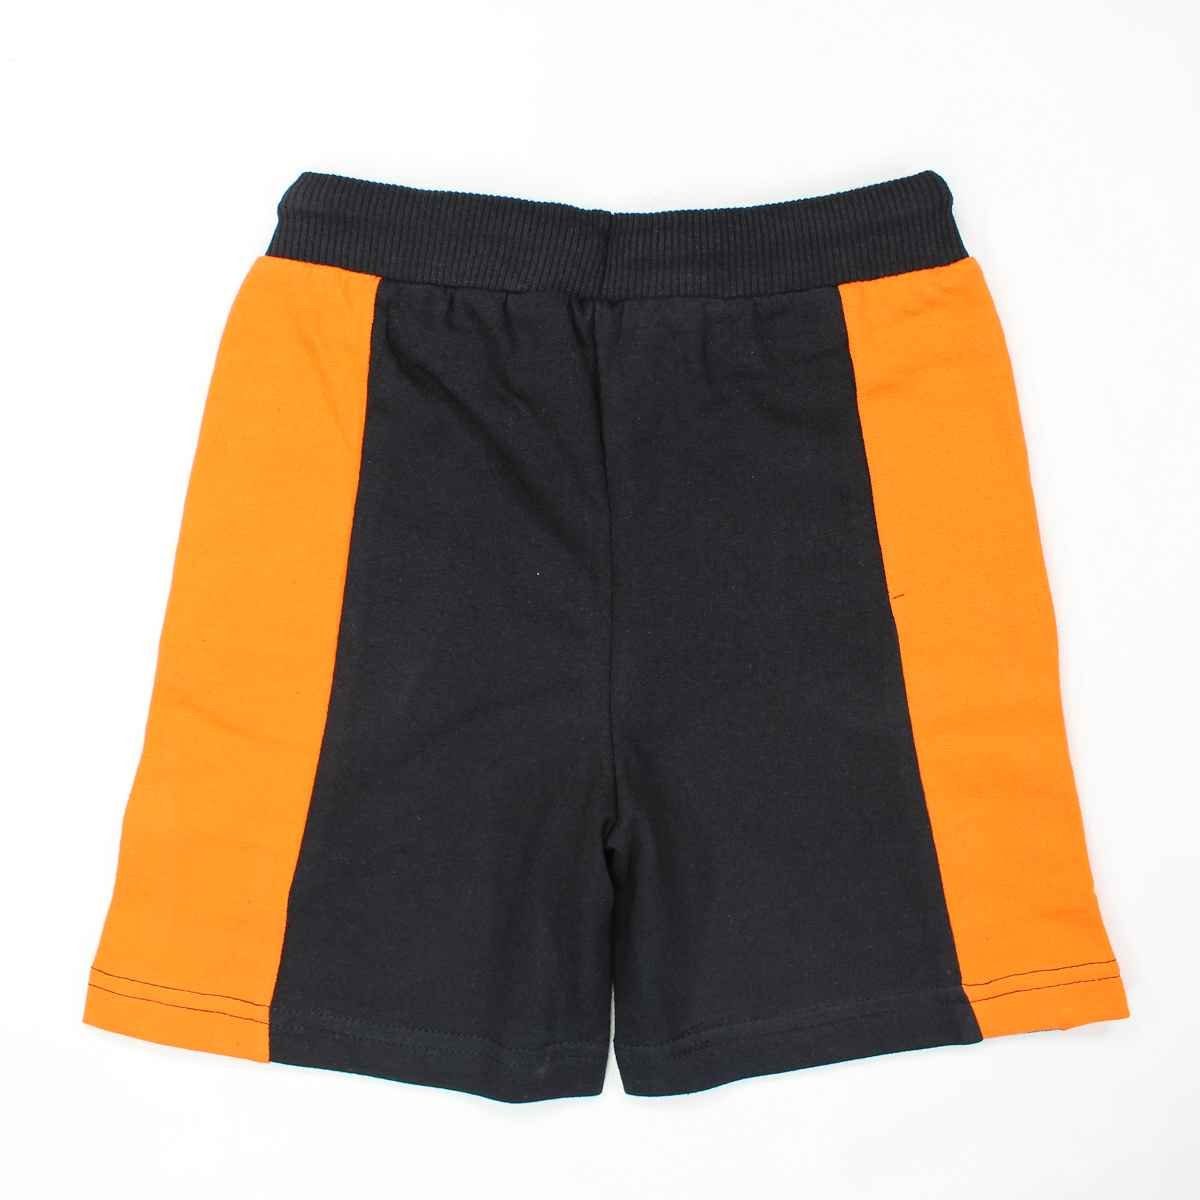 Naruto Shorts Naruto Shippuden Shorts Gr. 152 110 Kinder Jungen Baumwolle bis 100% Schwarz